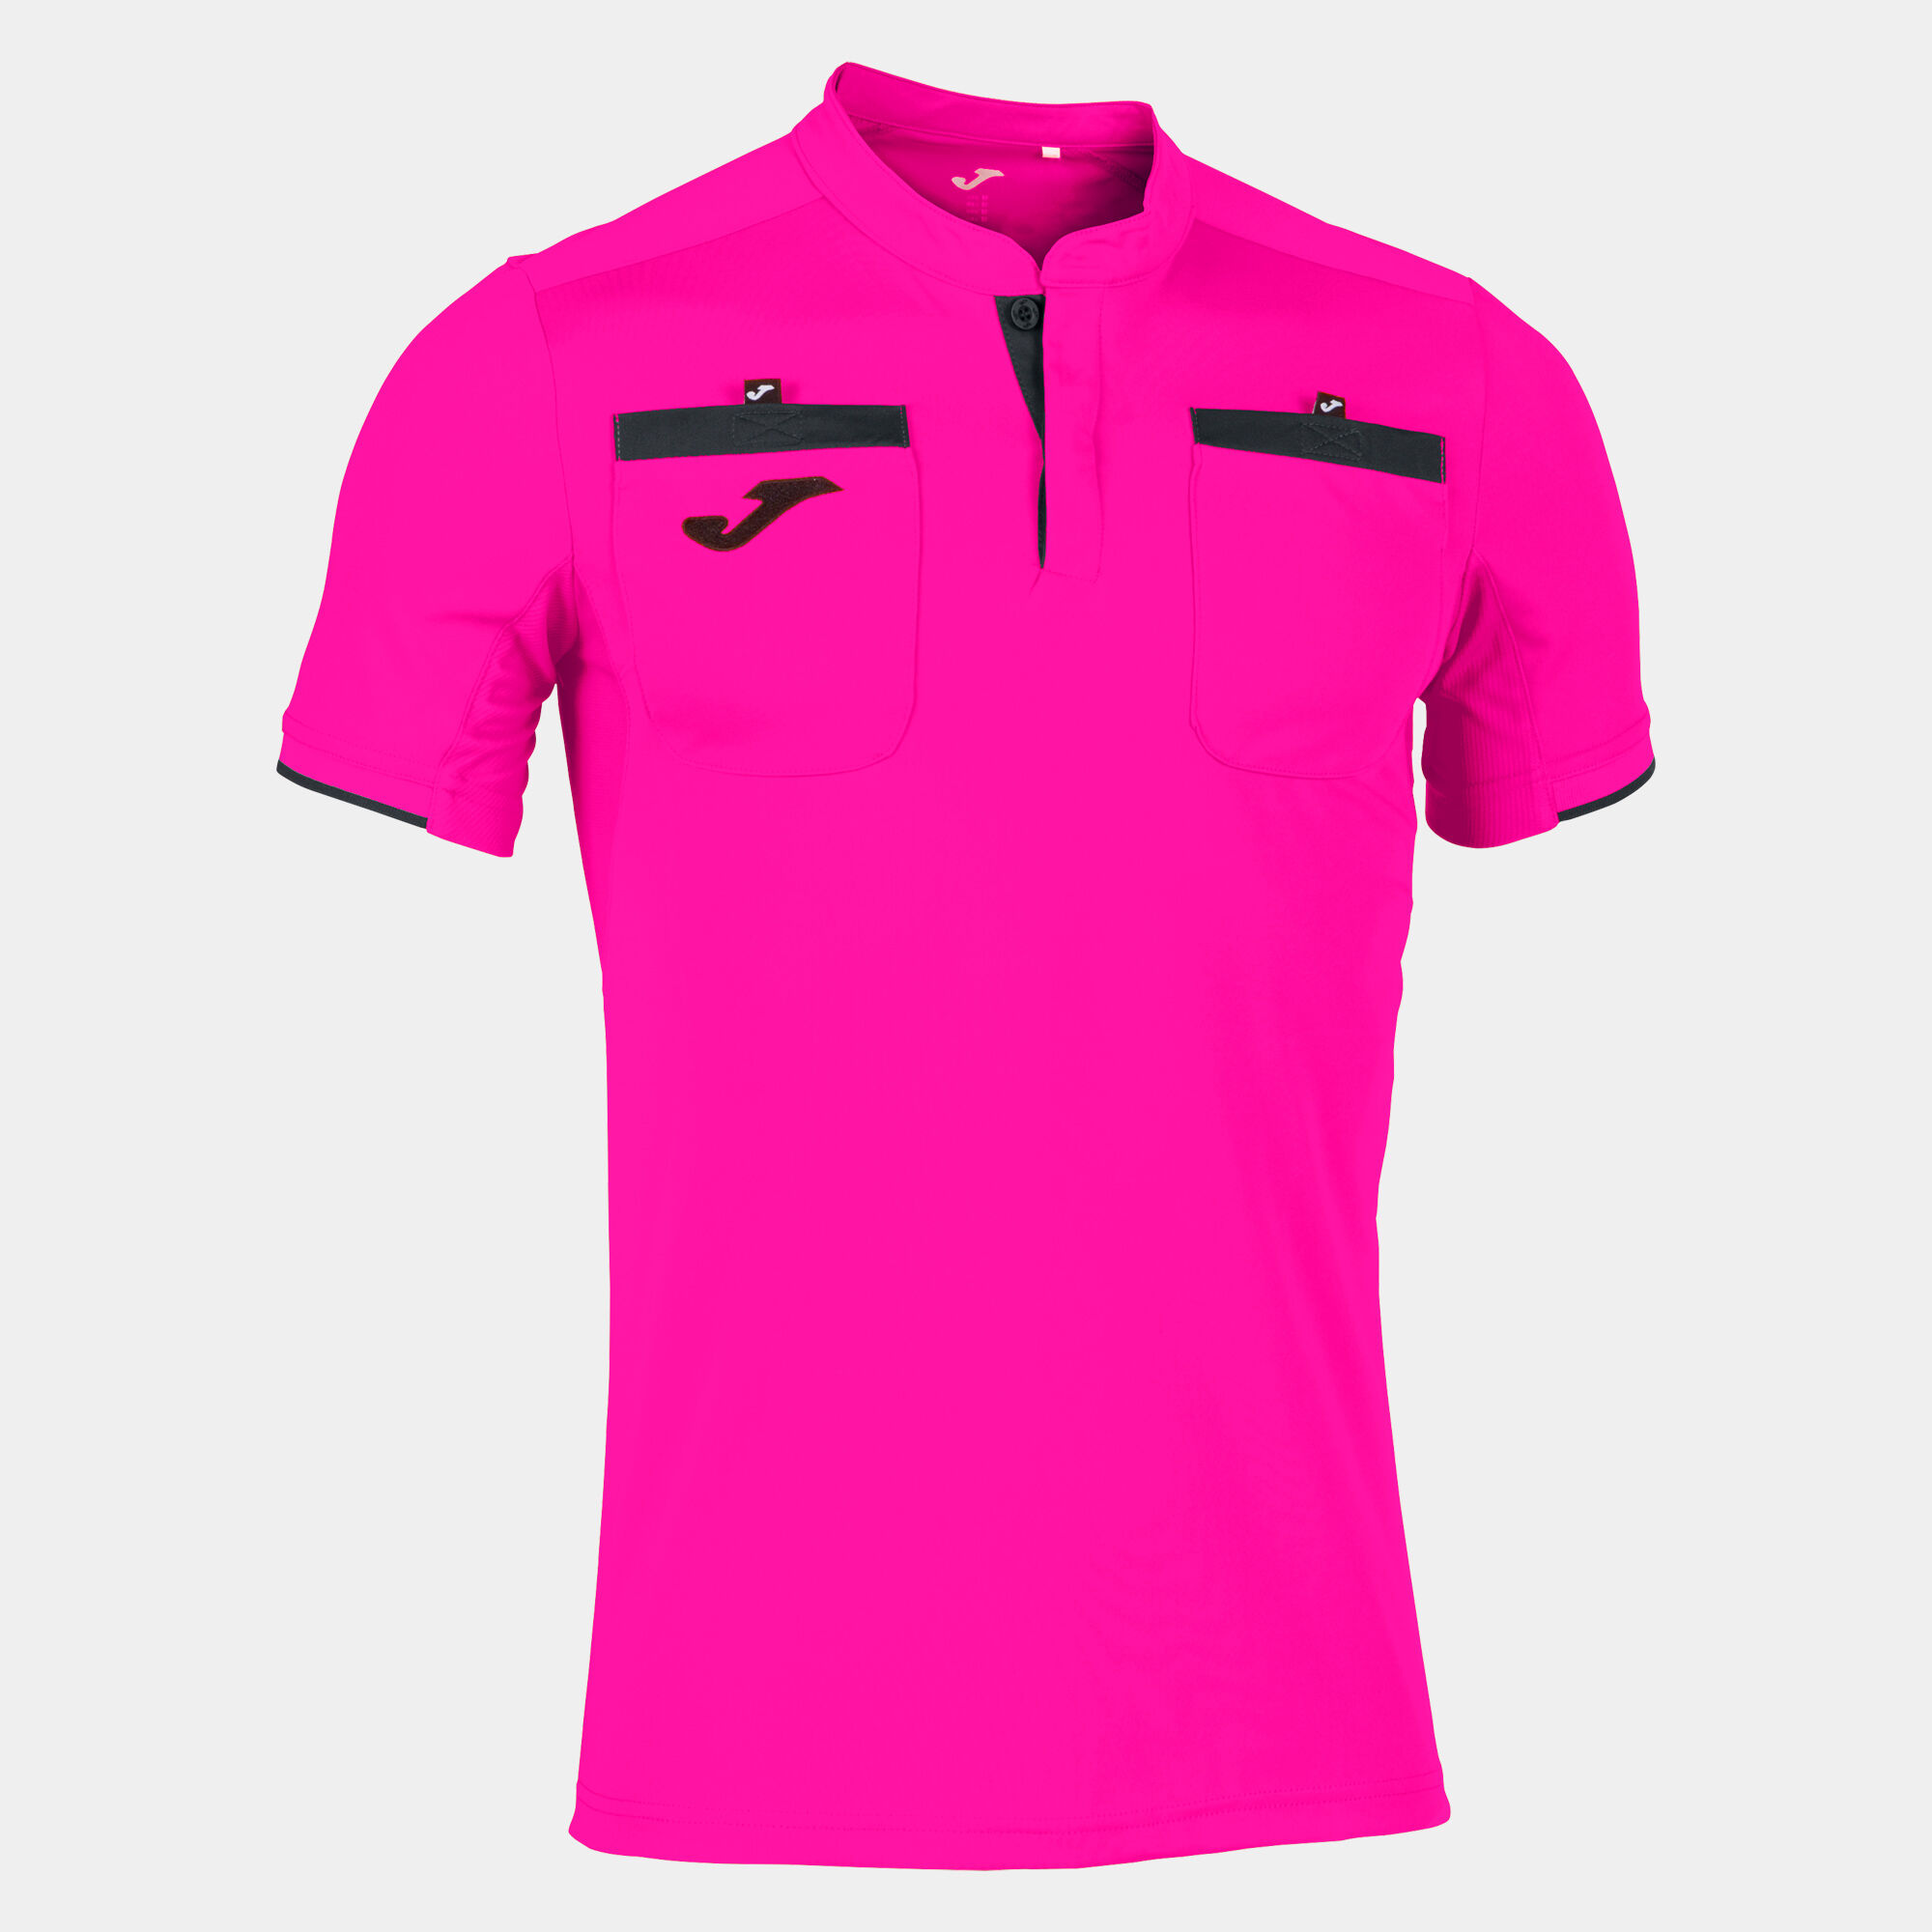 Camiseta manga corta hombre Referee rosa flúor